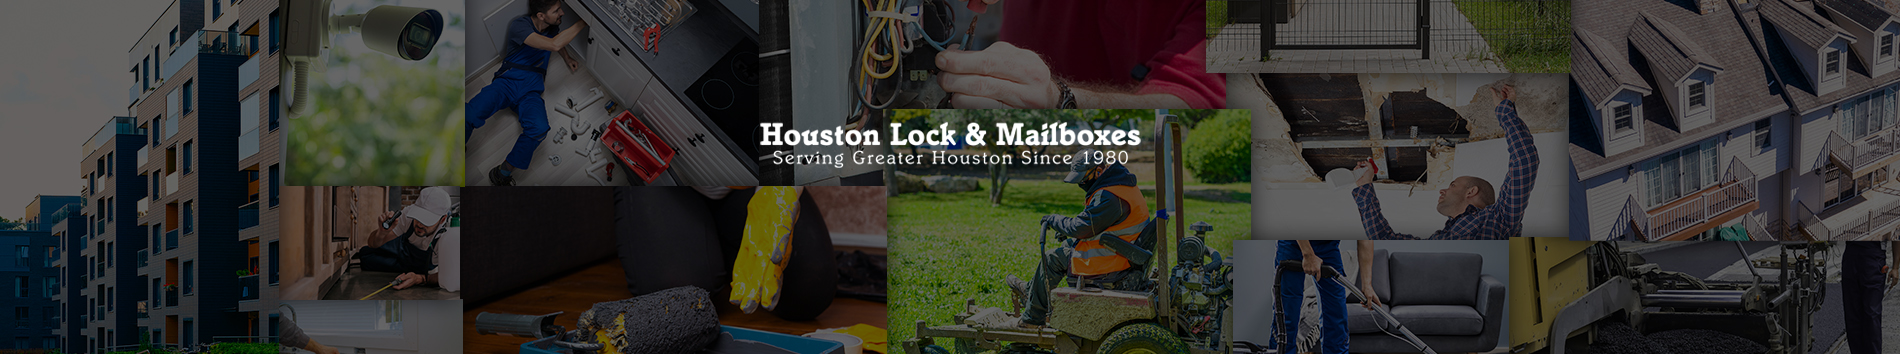 Houston Lock & Mailboxes